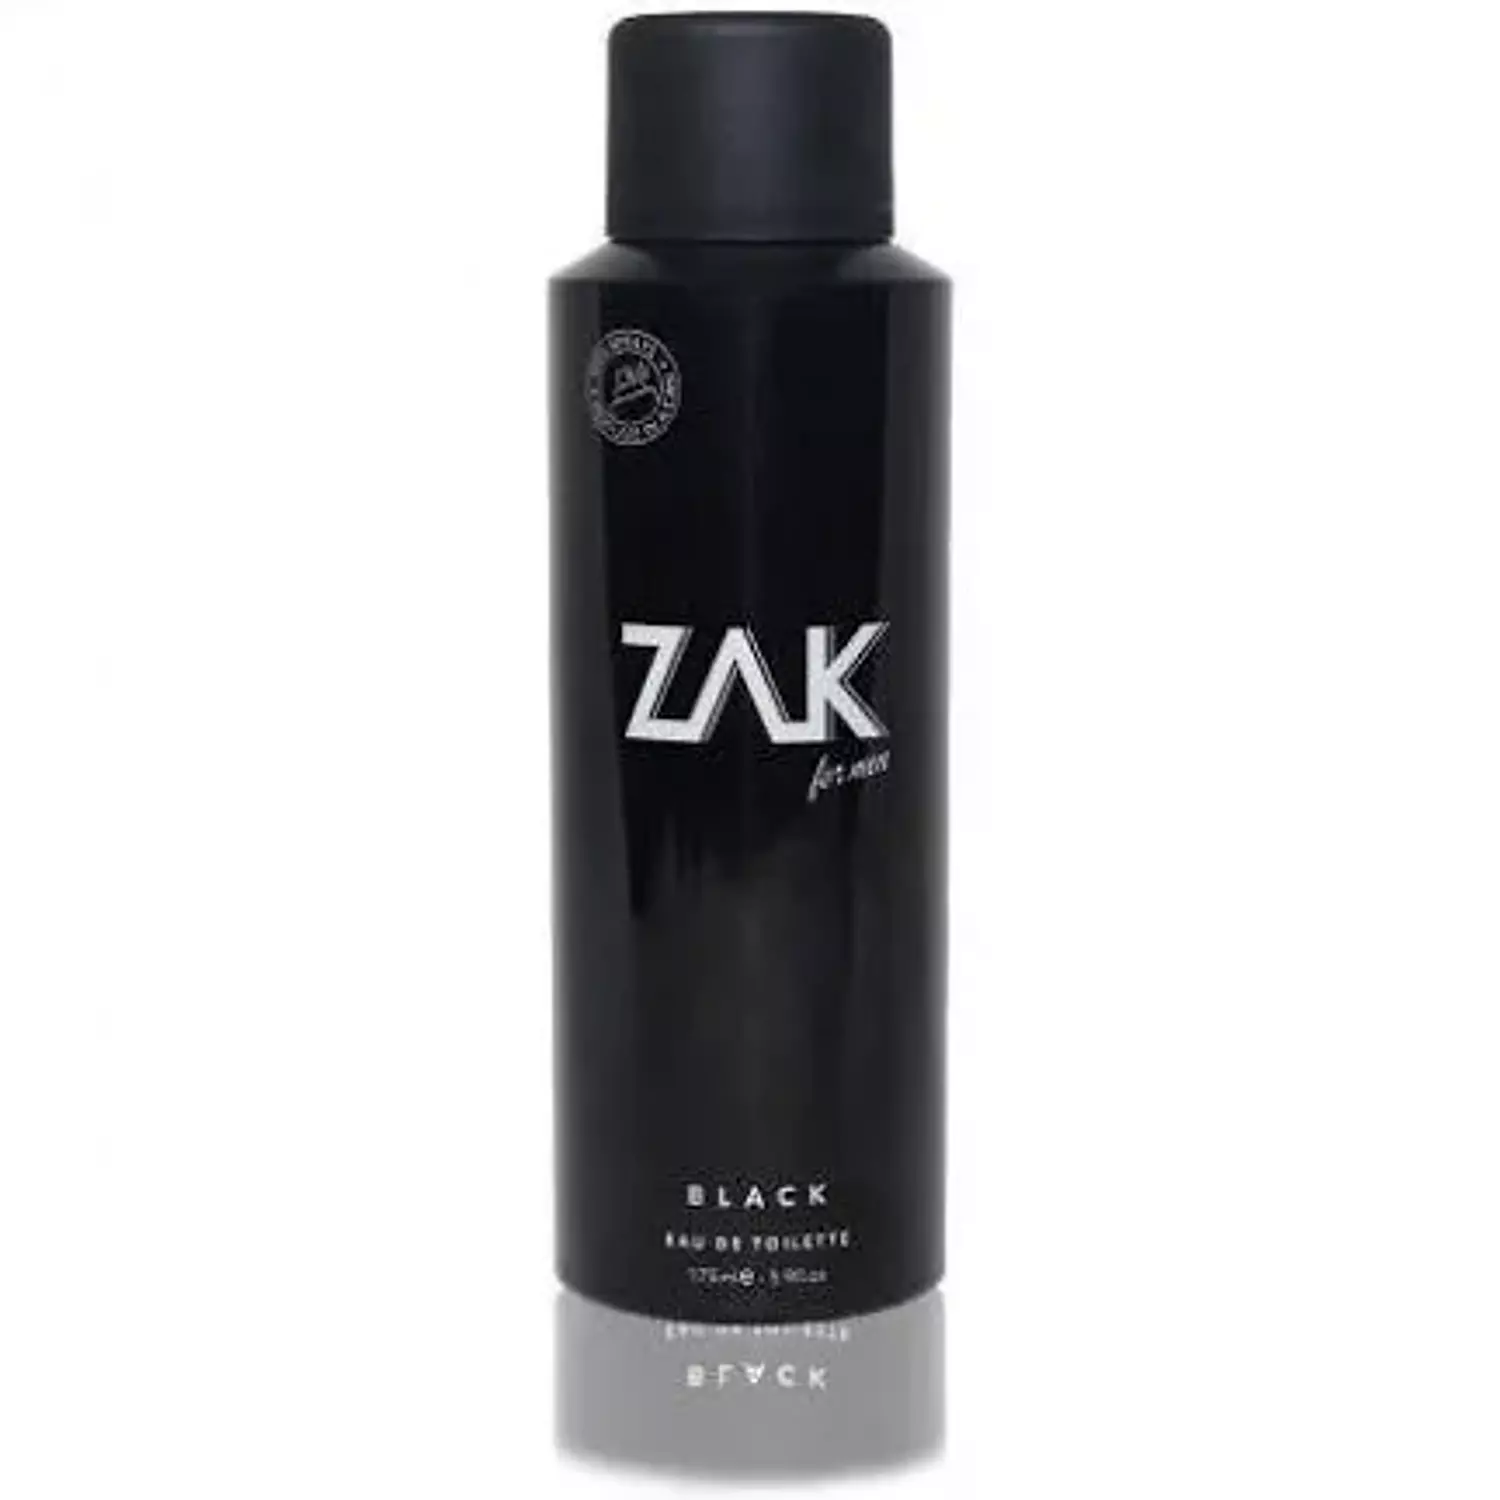 ZAK Black - Eau De Toilette - 175 ml hover image